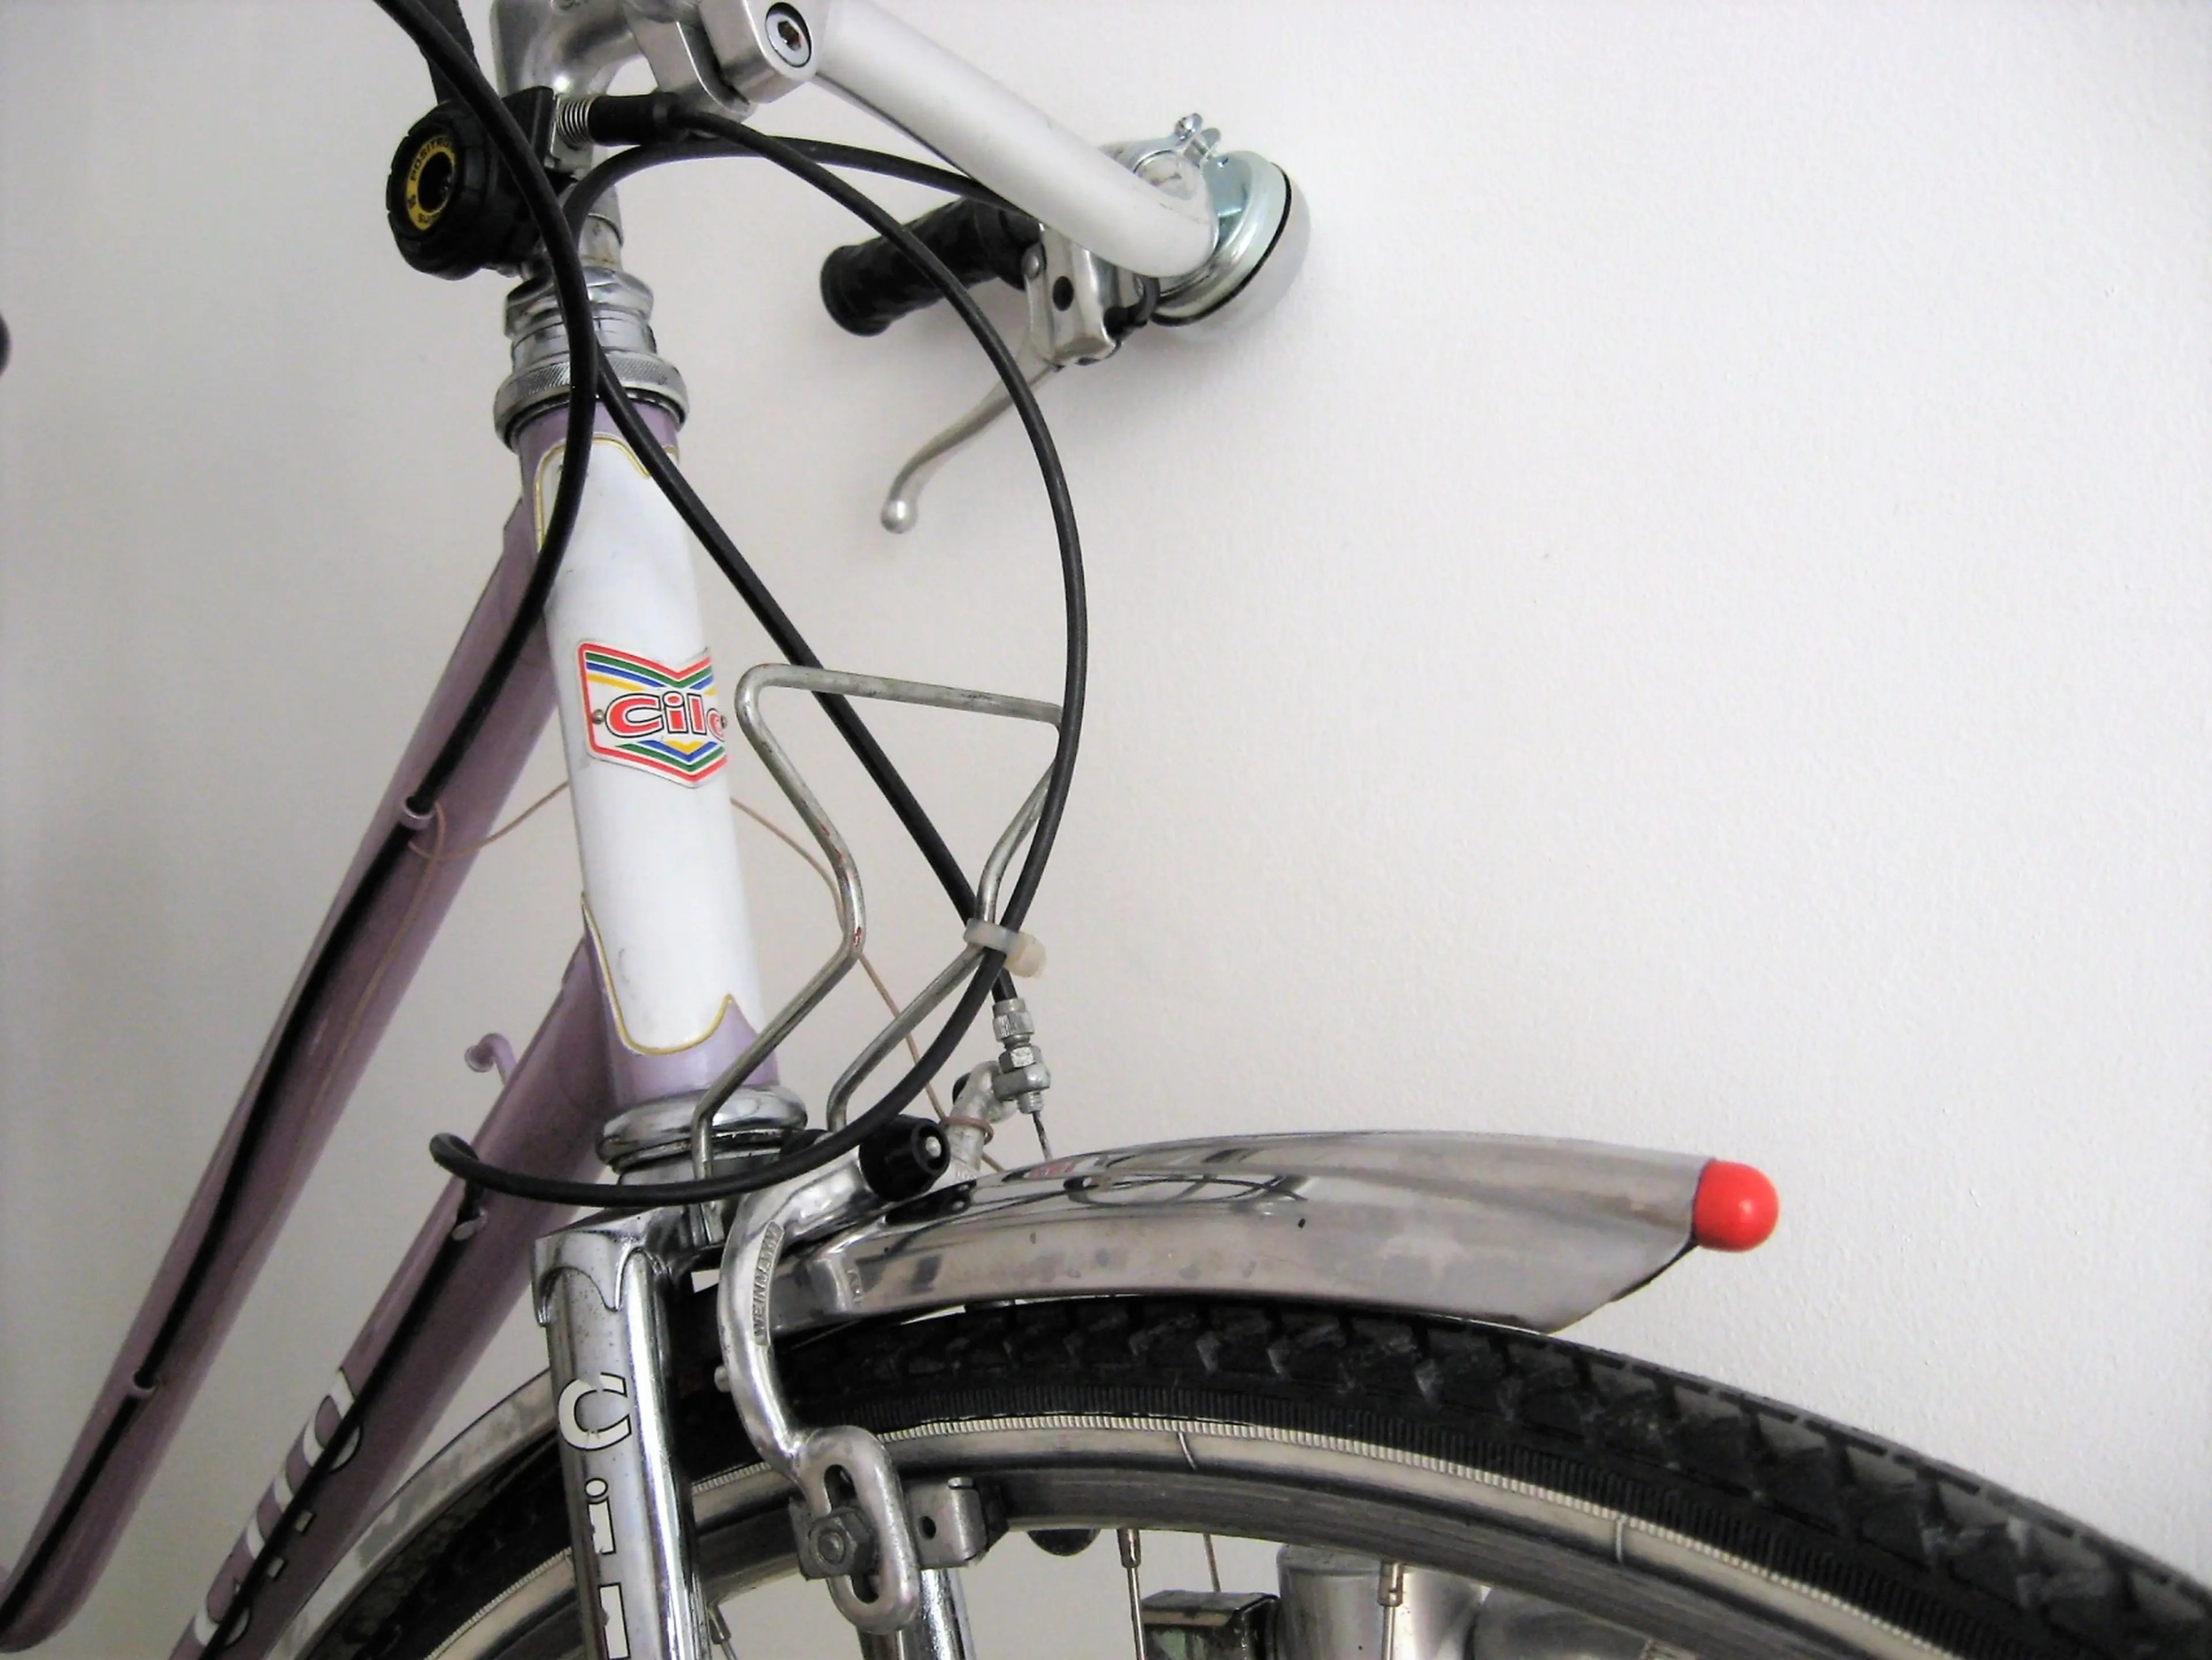 2. Bicicleta cursiera de dama CILO